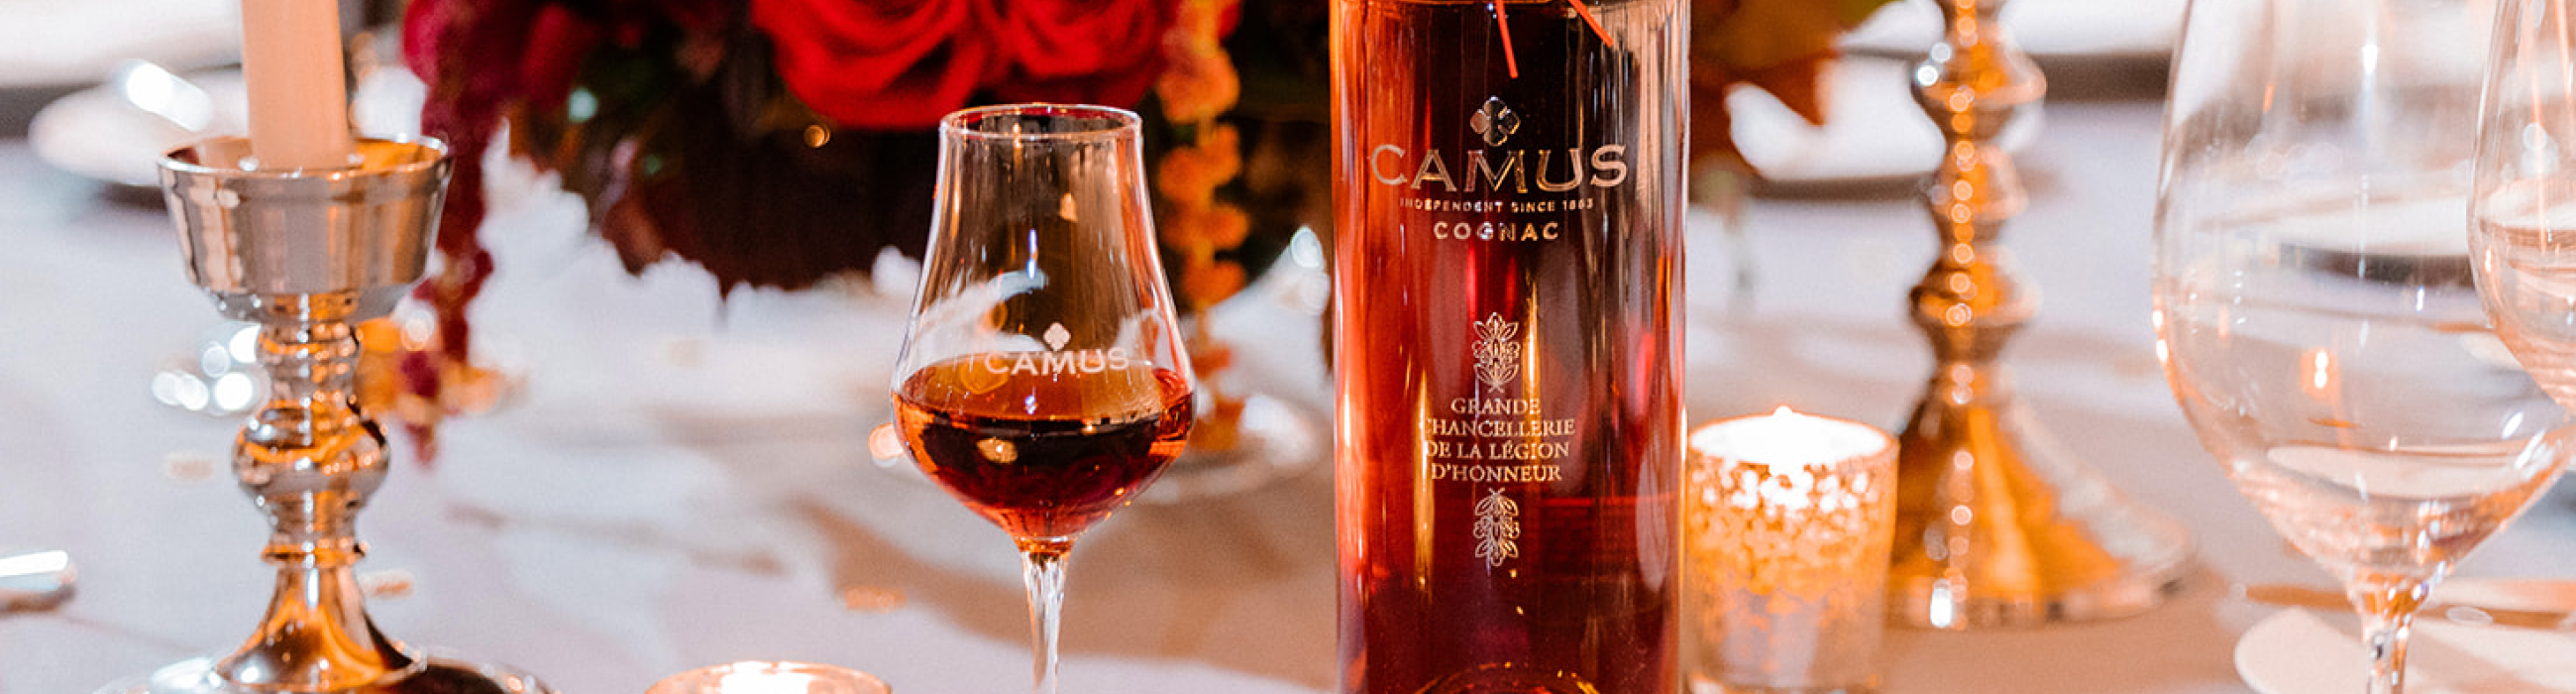 camus cognac oeuvres sur-mesure cuvée d'exception luxe